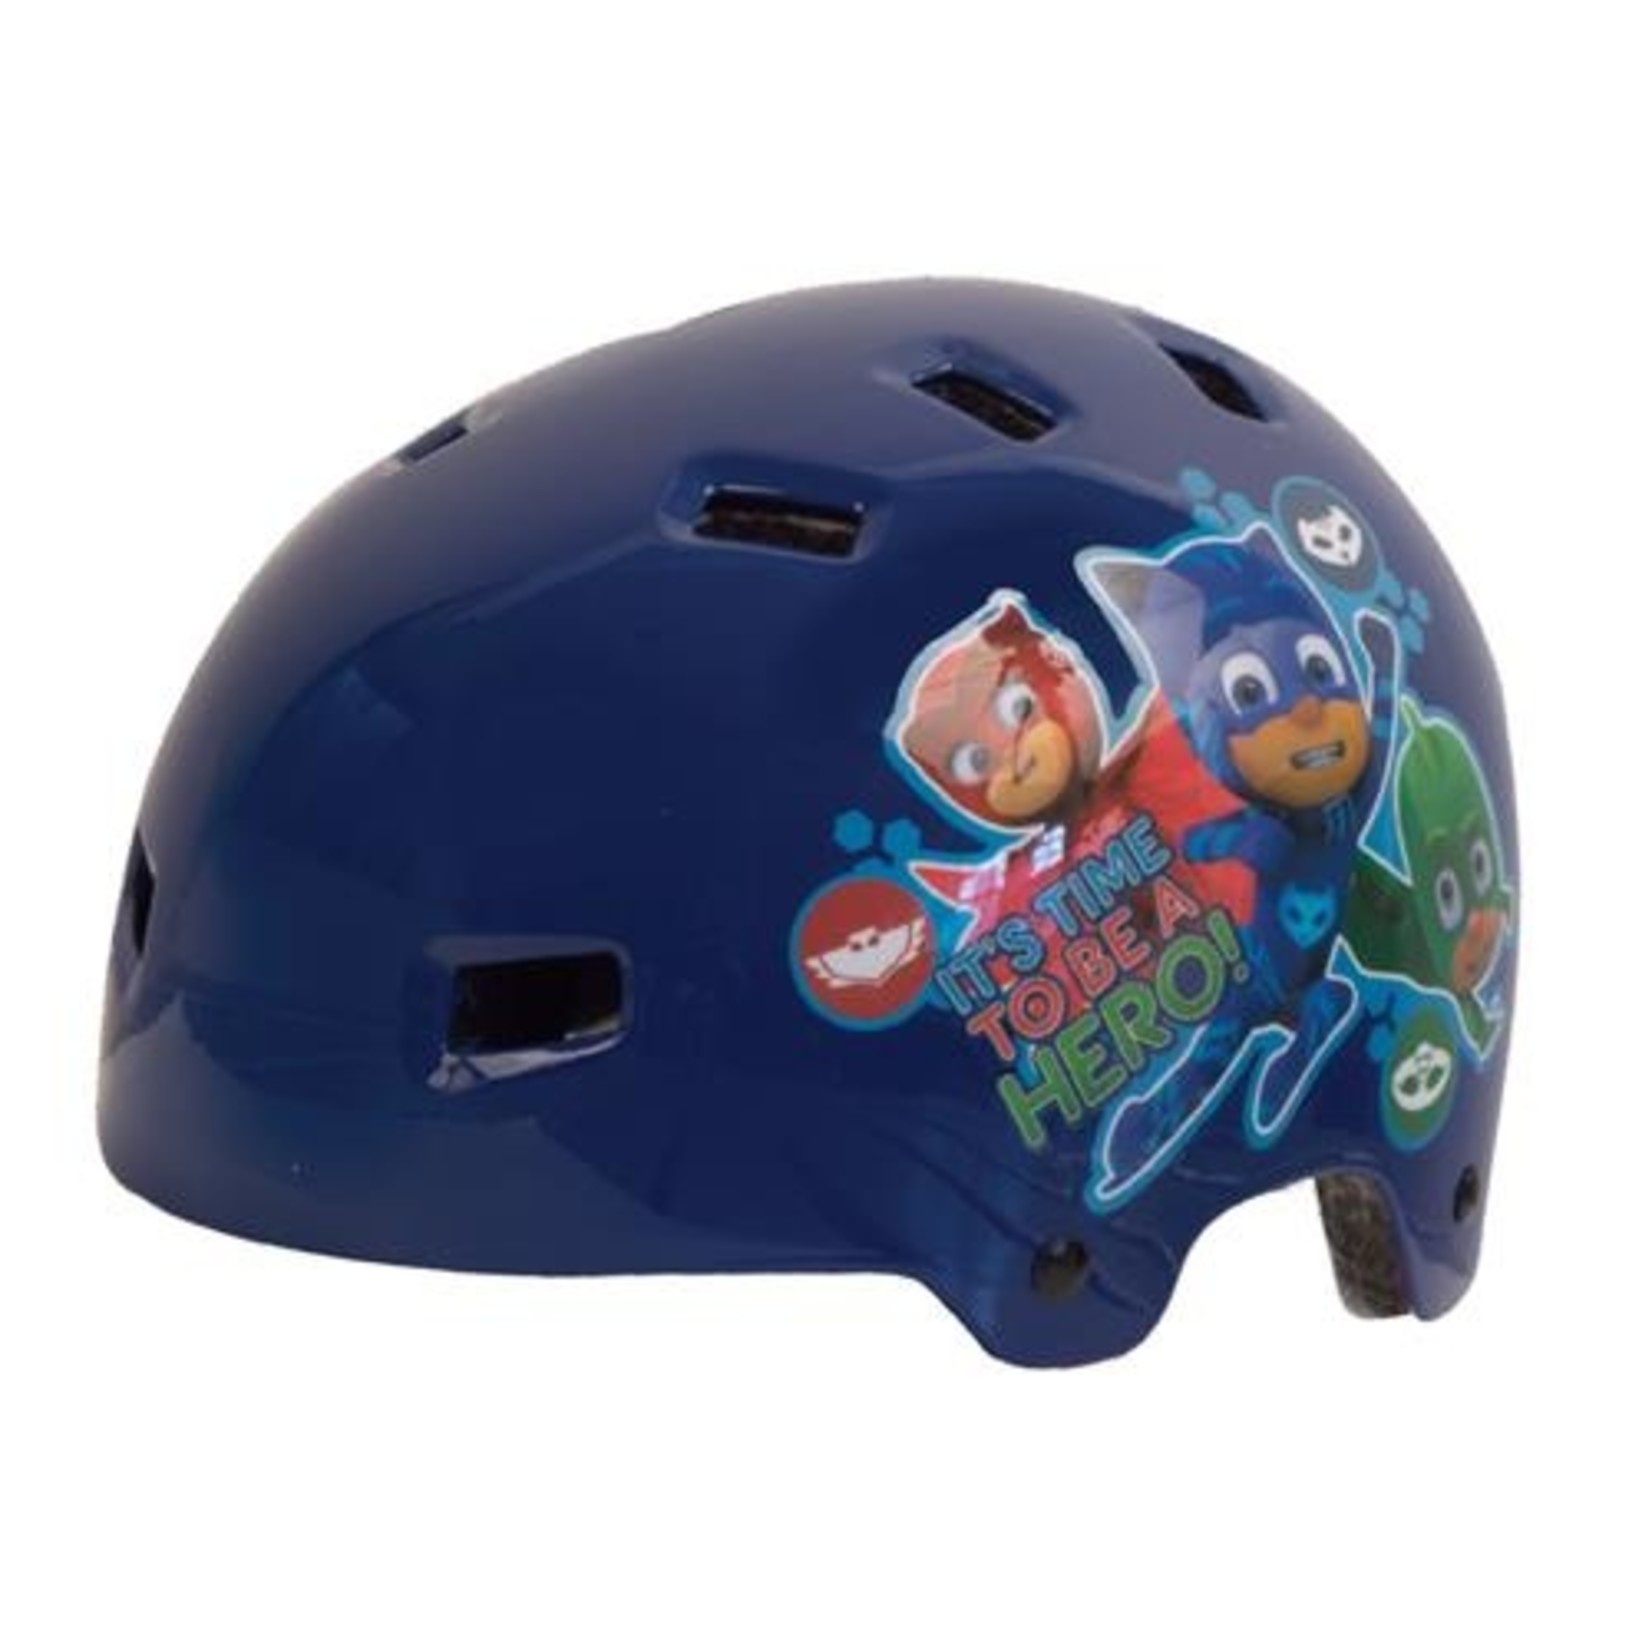 Other PJ Masks Kid's Bike Helmet T35 - Size 50-54cm - Licensed